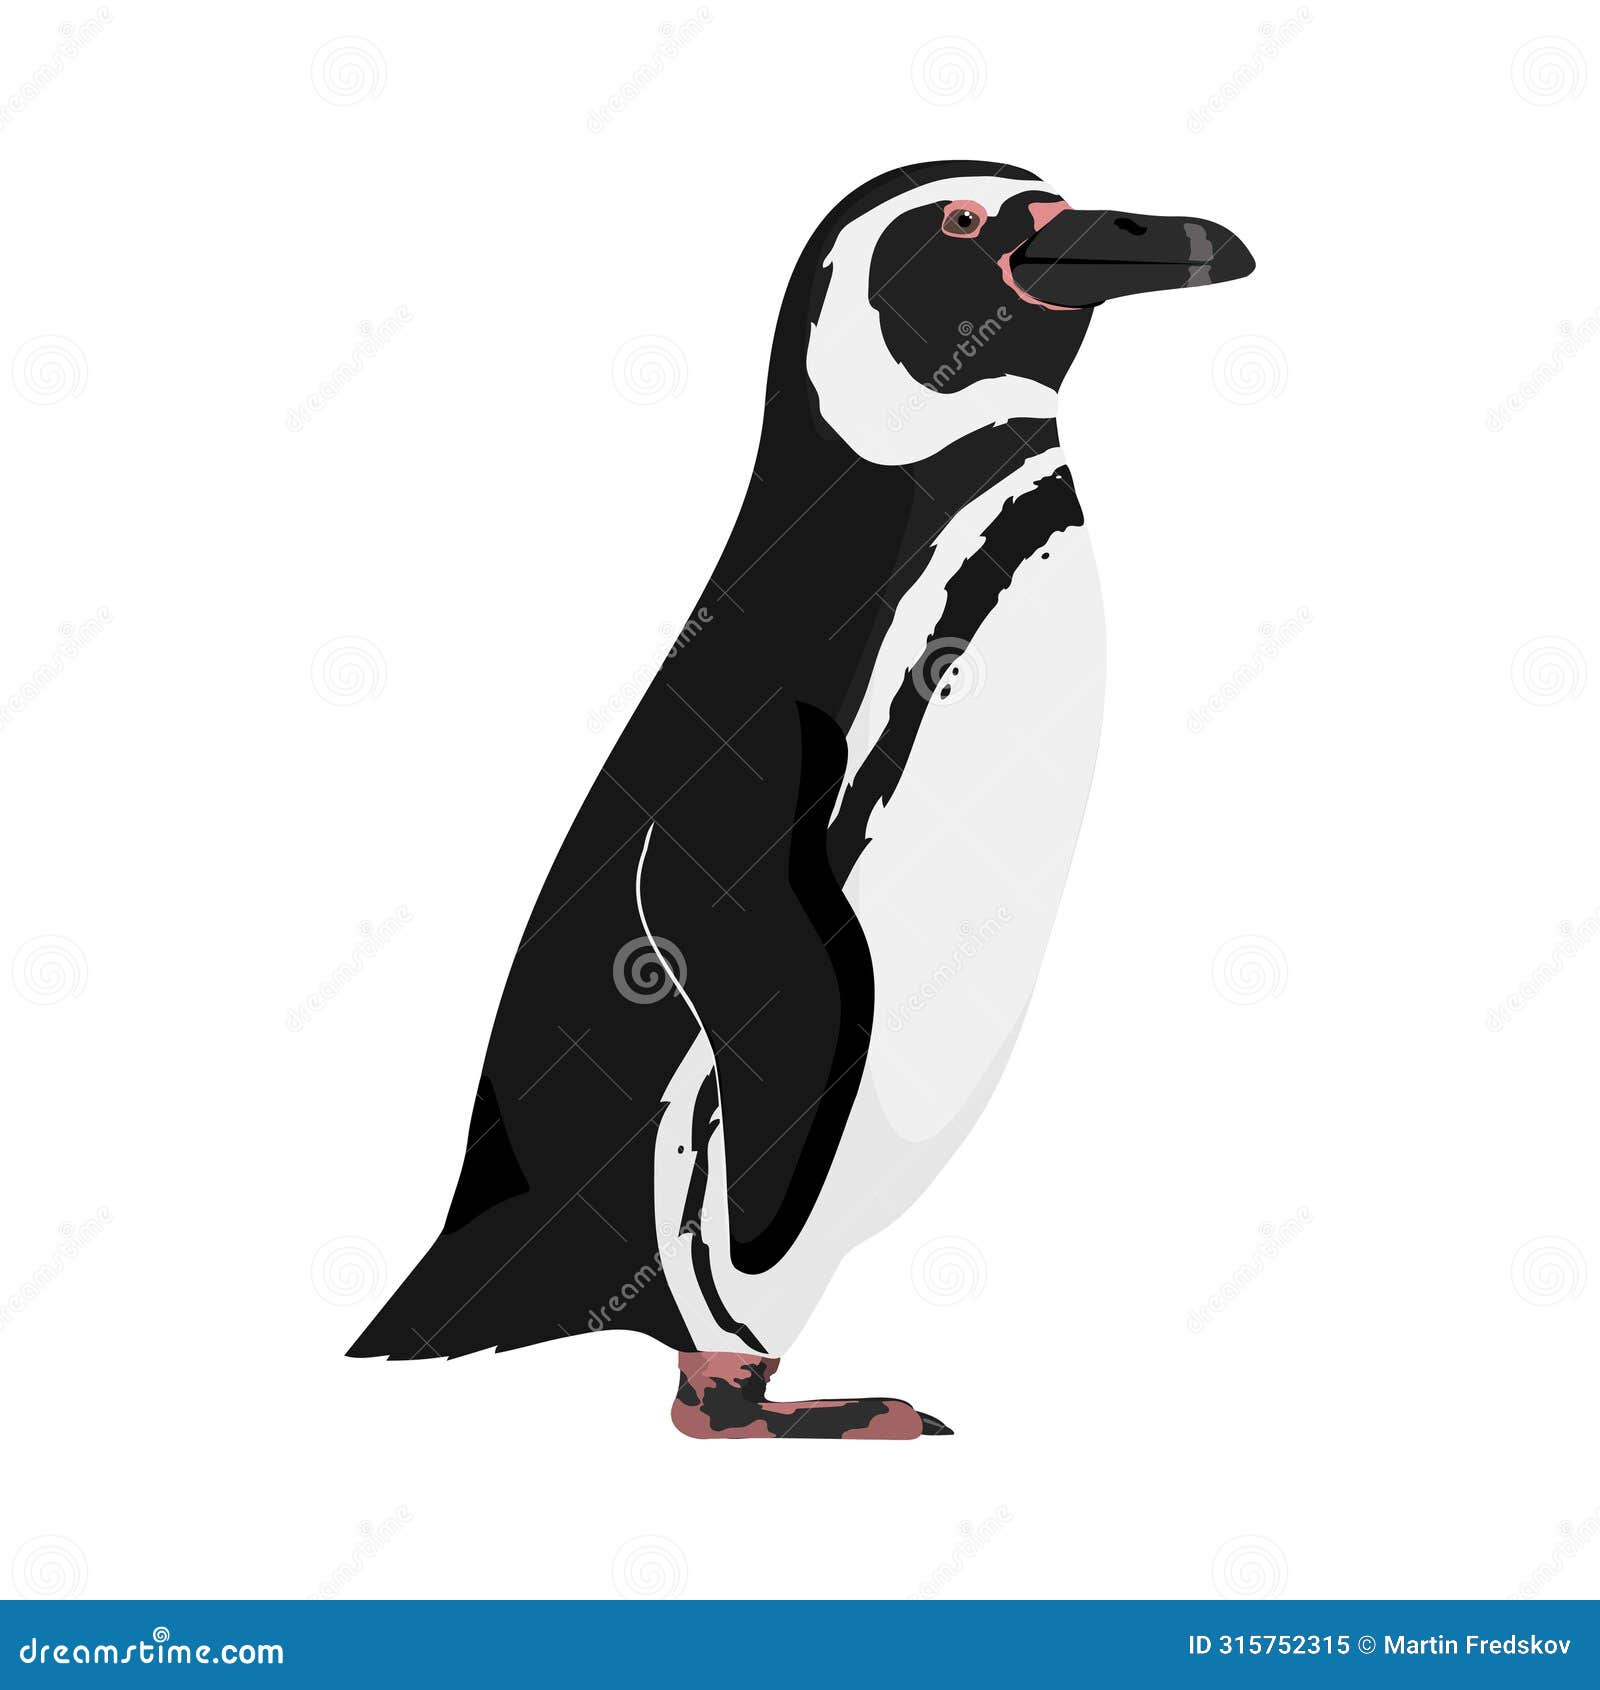 spheniscus magellanicus - magellanic penguin - lateral view